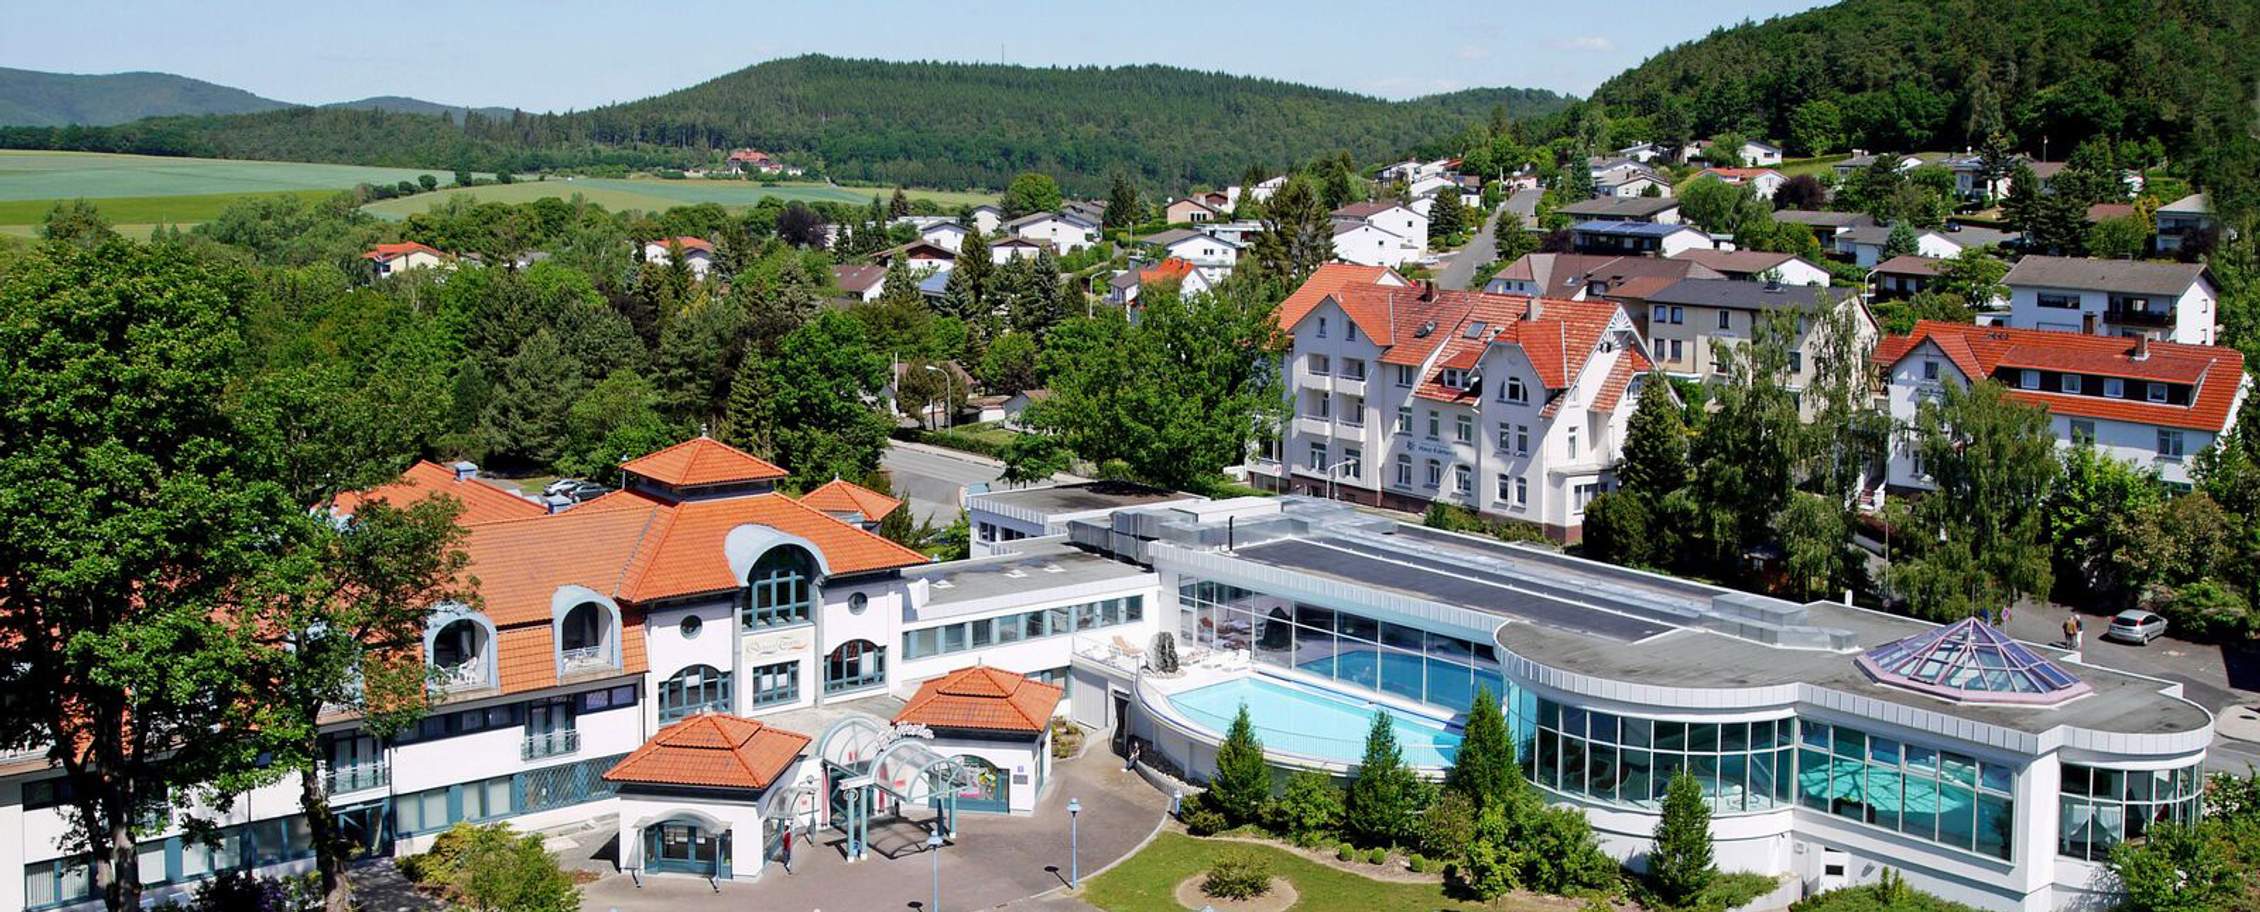 Göbel’s Hotel AquaVita – Bad Wildungen